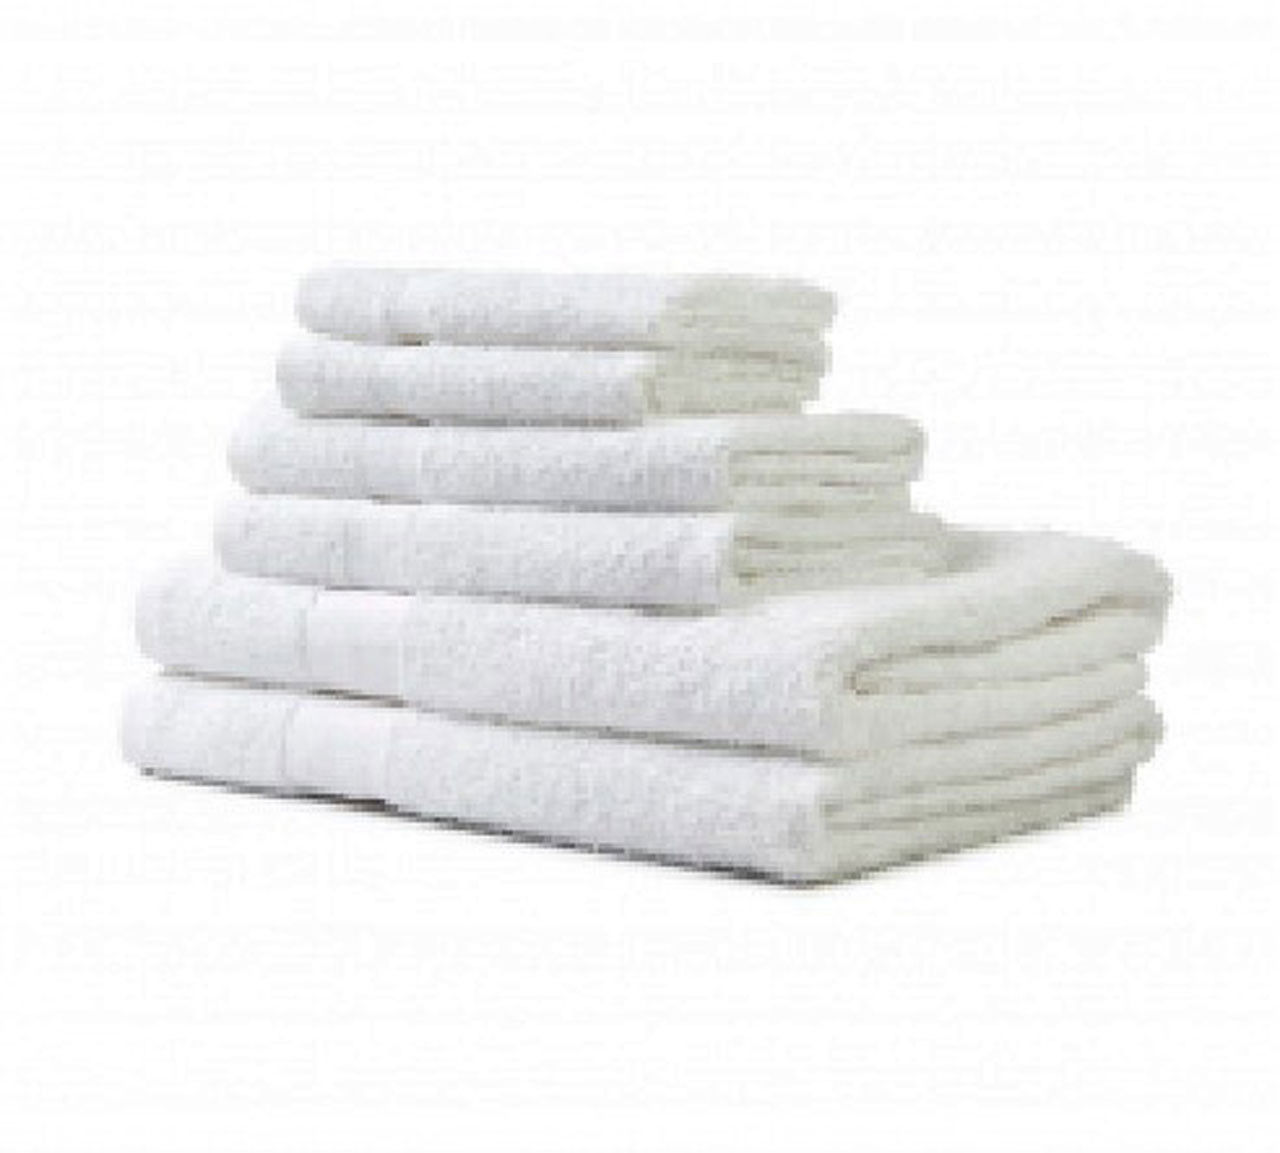 How long should good bath towels last?